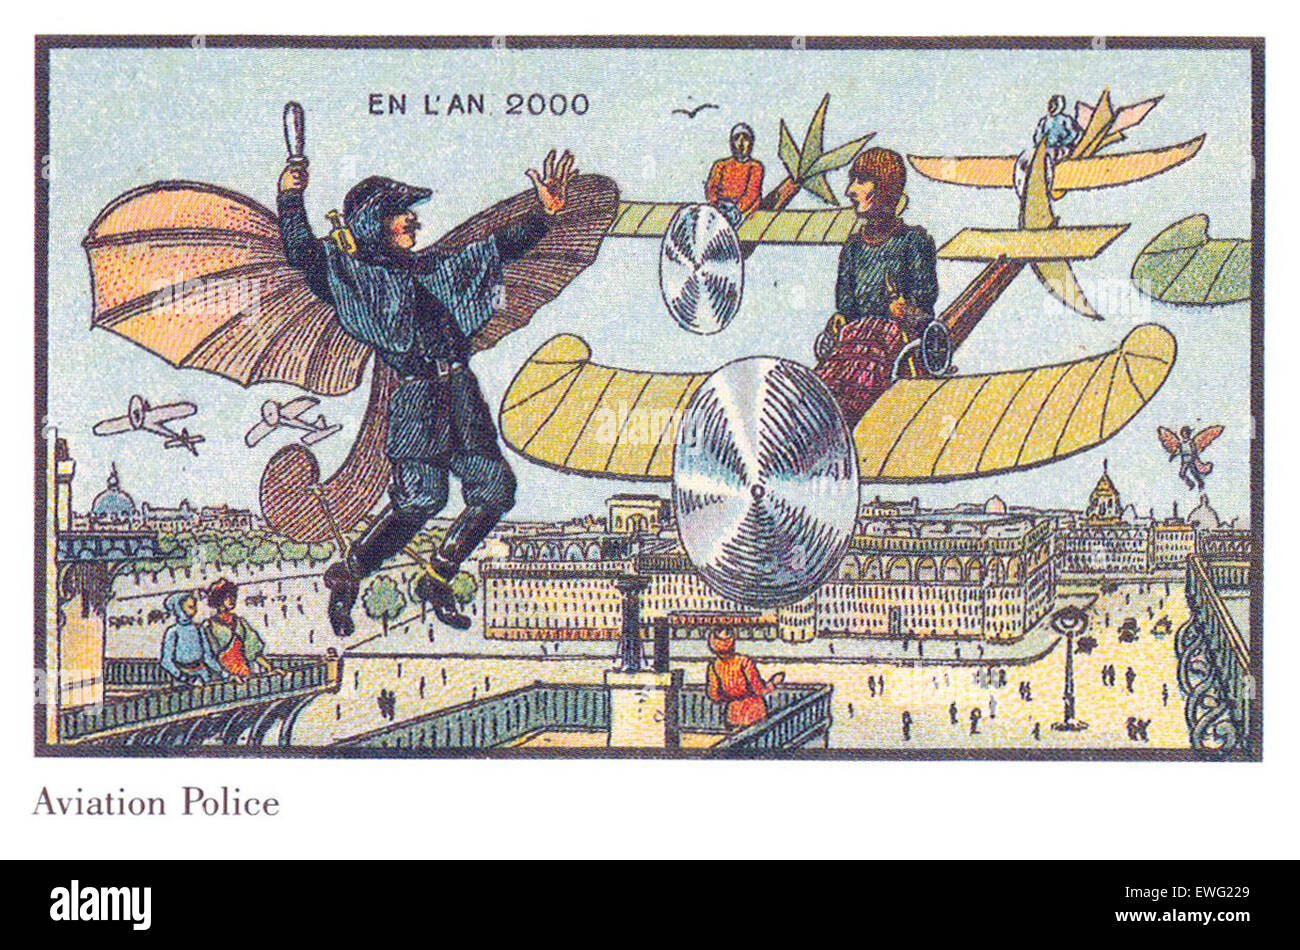 Luftfahrt-Polizei Frankreich in das Jahr 2000 futuristische Illustration Jean-Marc Côté Vintage Illustration futuristische Abbildung Stockfoto